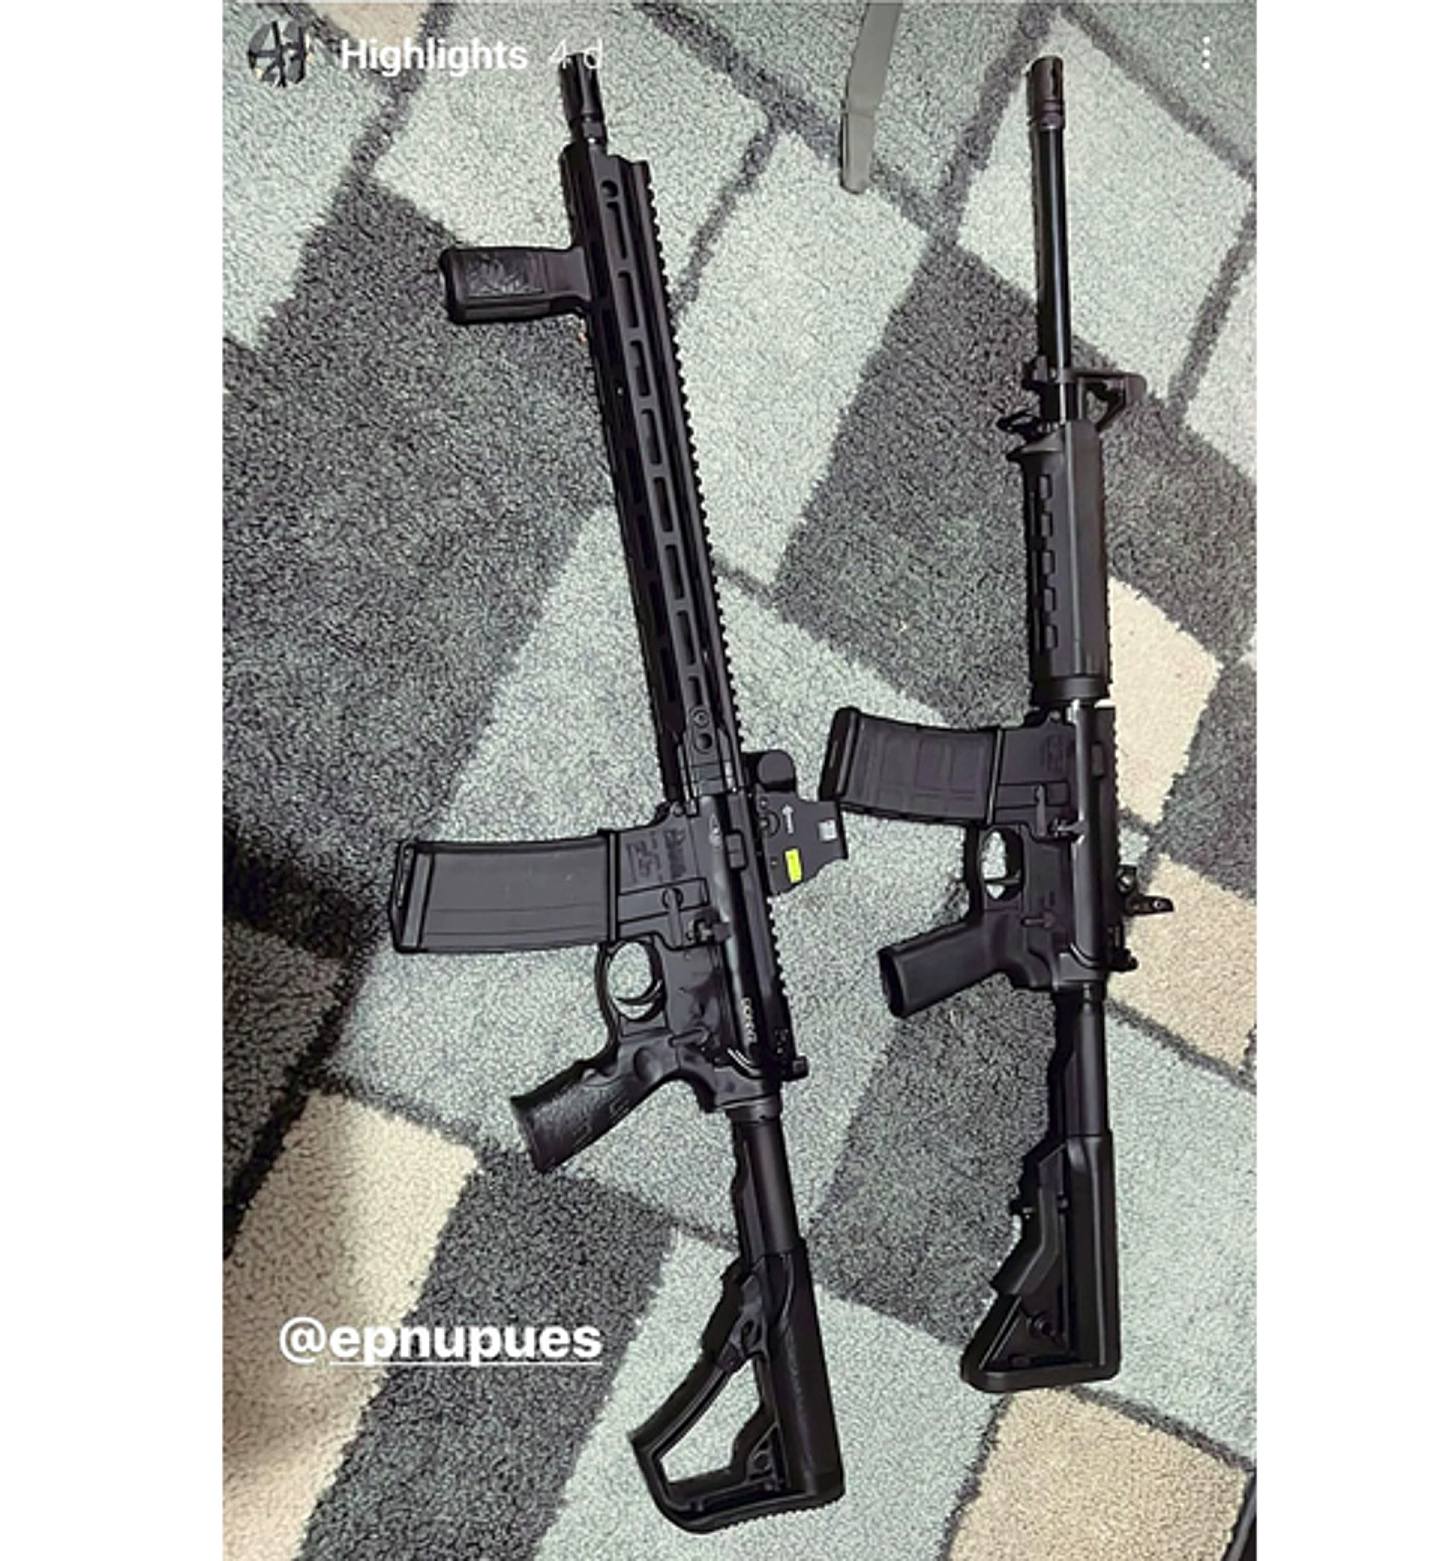 疑似涉案枪手拉莫斯还曾上载枪支的照片。 (salv8dor_/Instagram)